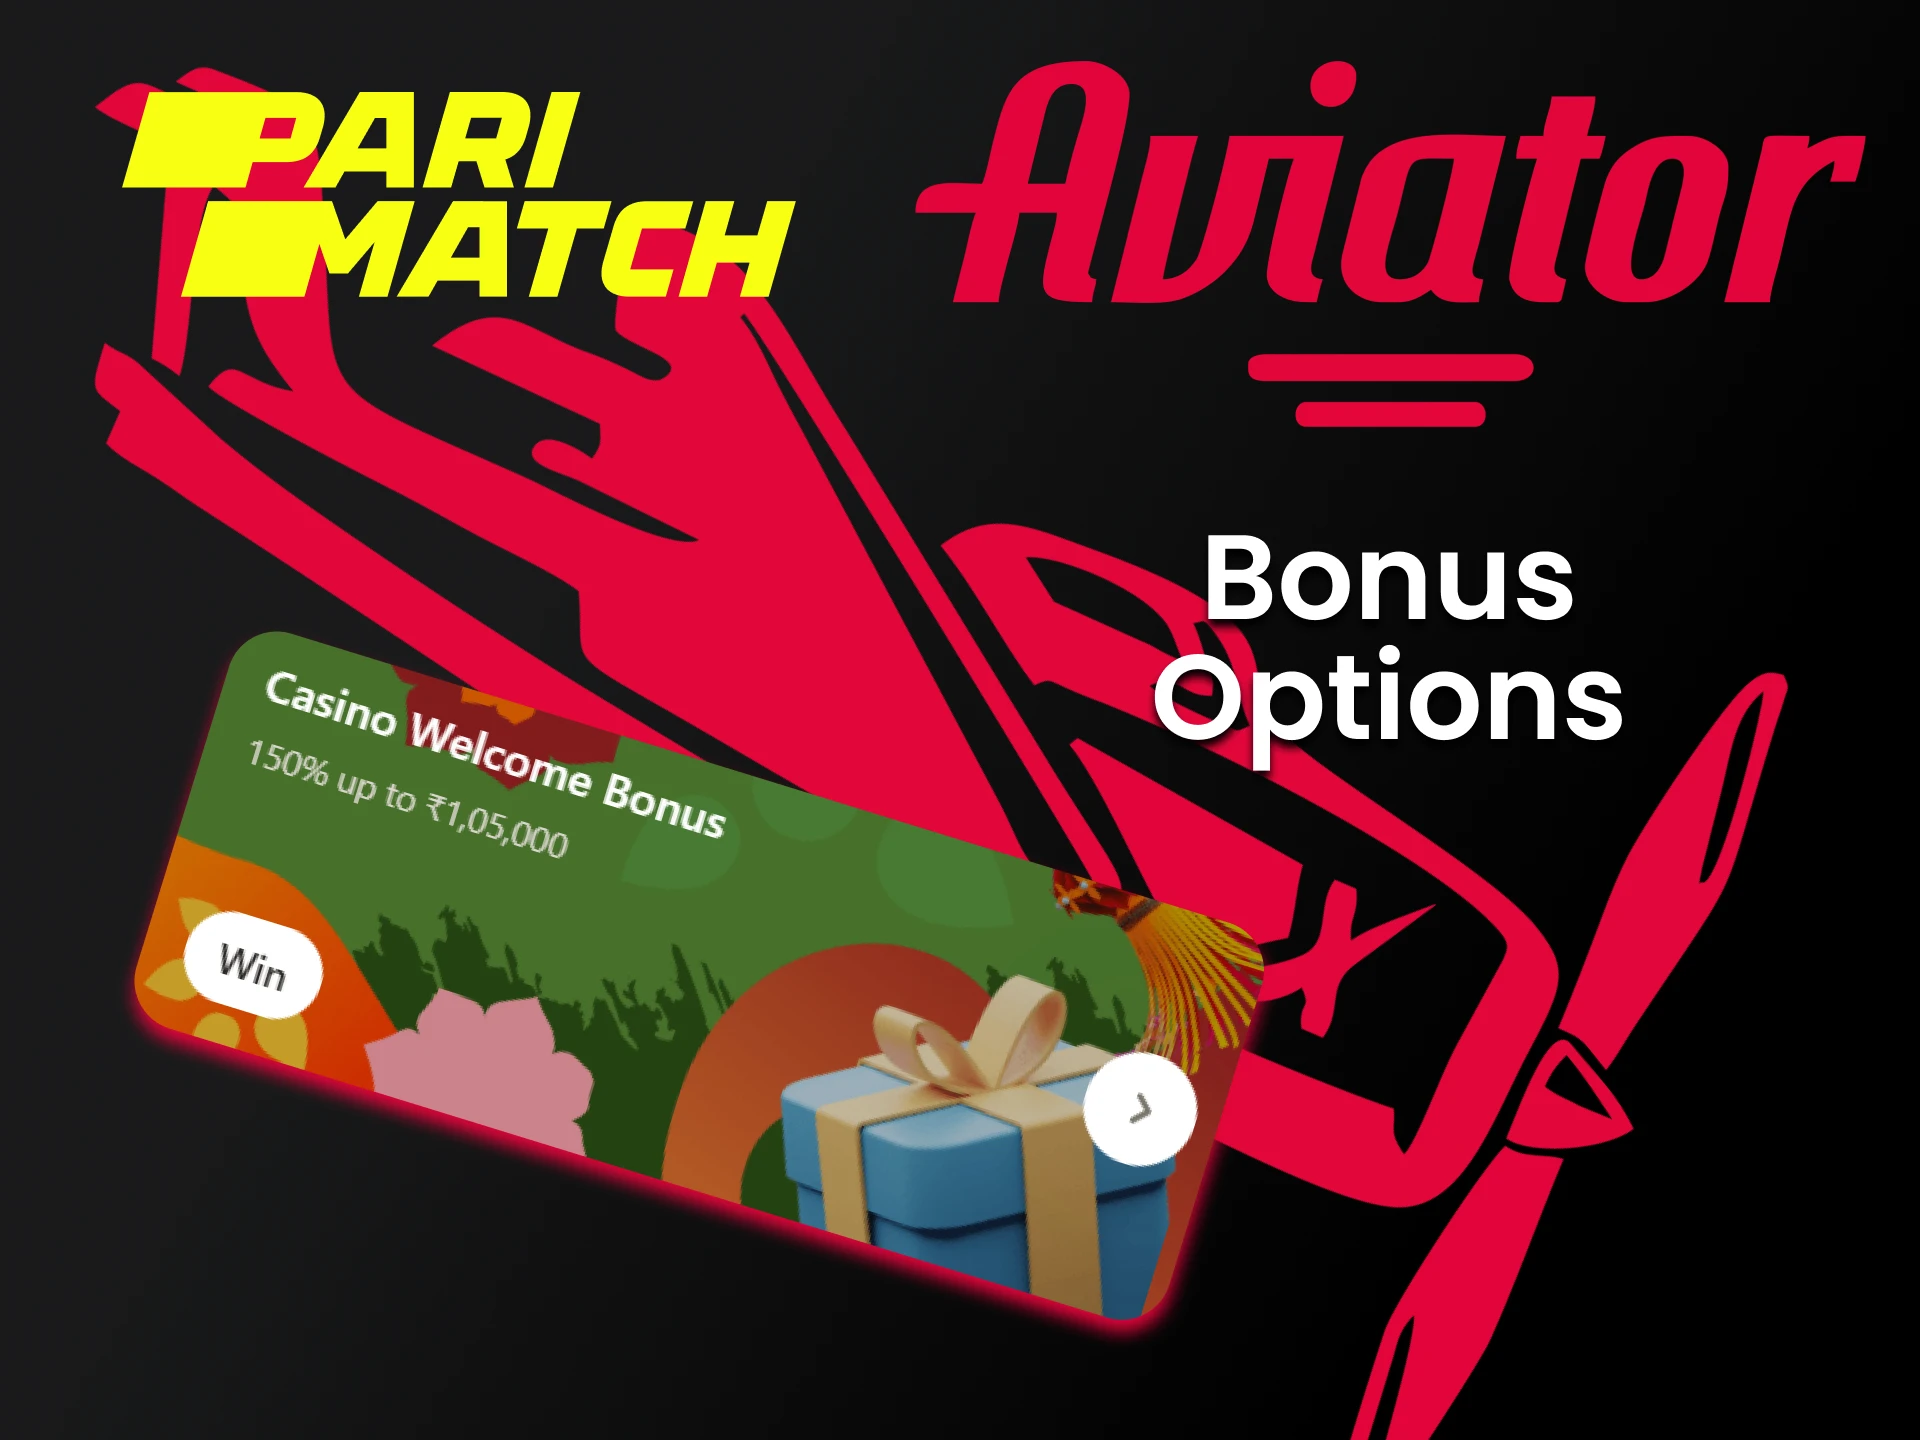 Receba um bônus do Parimatch por vitórias no jogo Aviator.